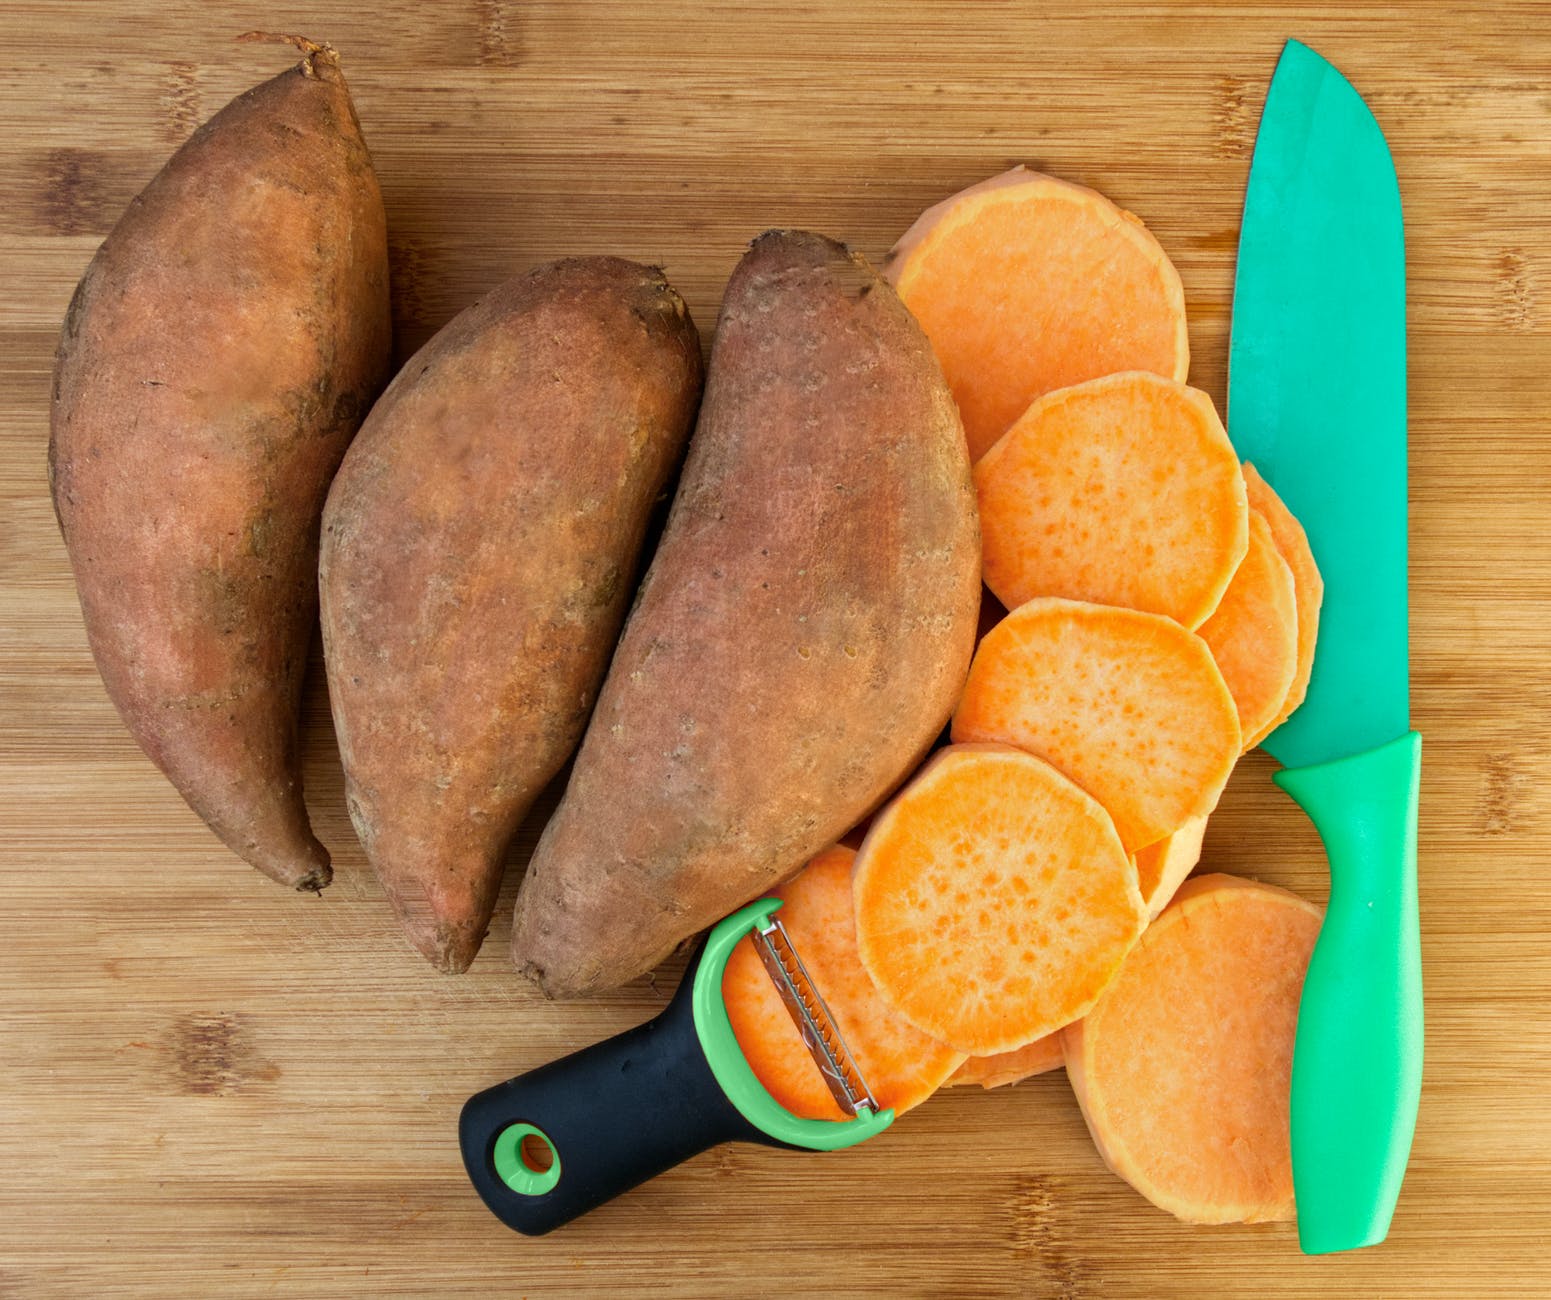 Aprenda como cultivar batata yacon e aproveite seus benefícios!